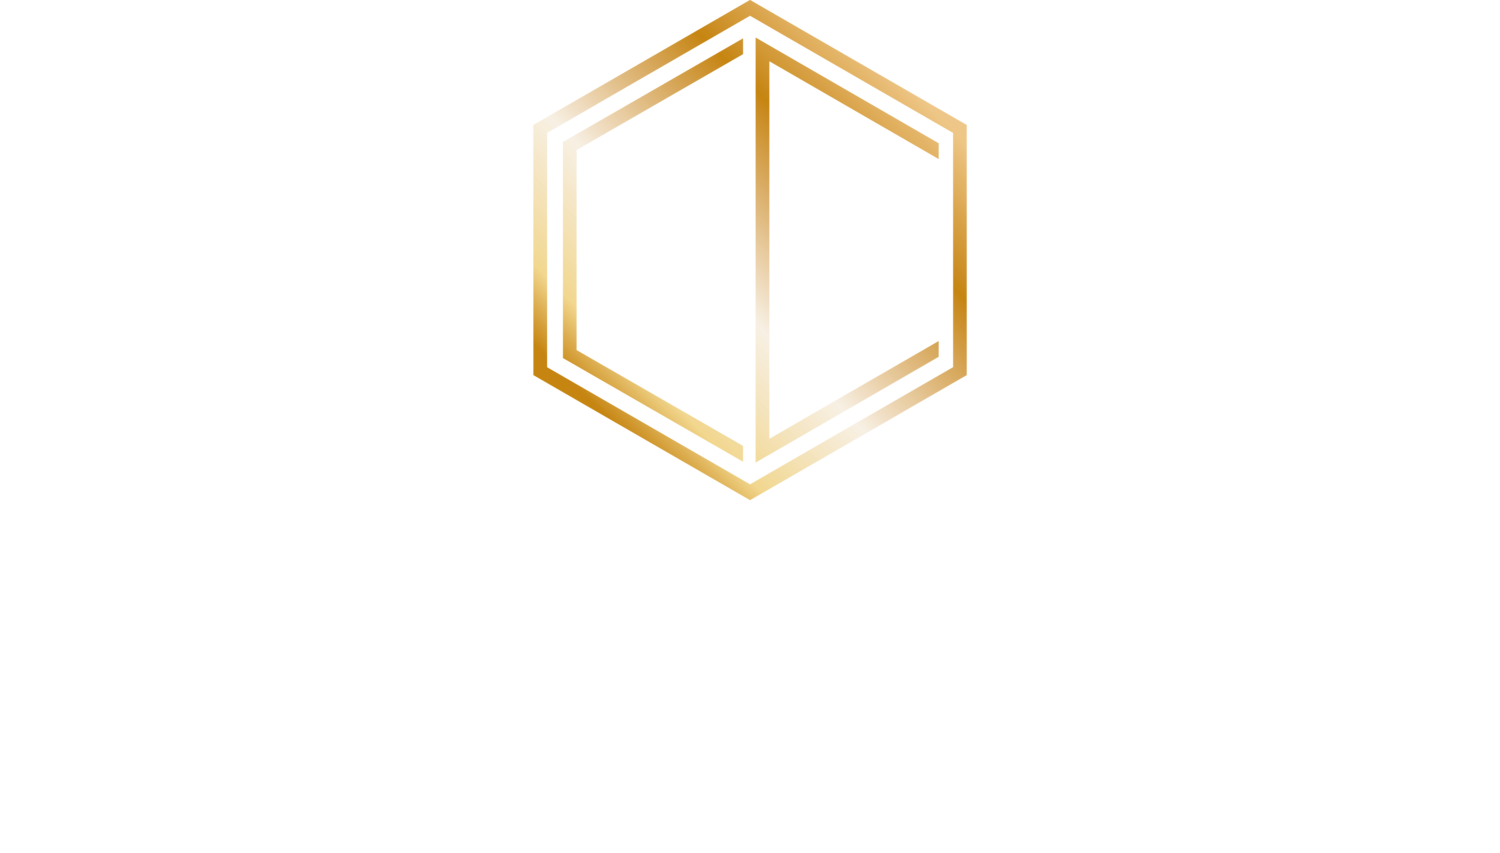 CAROLE CROWE INTERIOR DESIGN